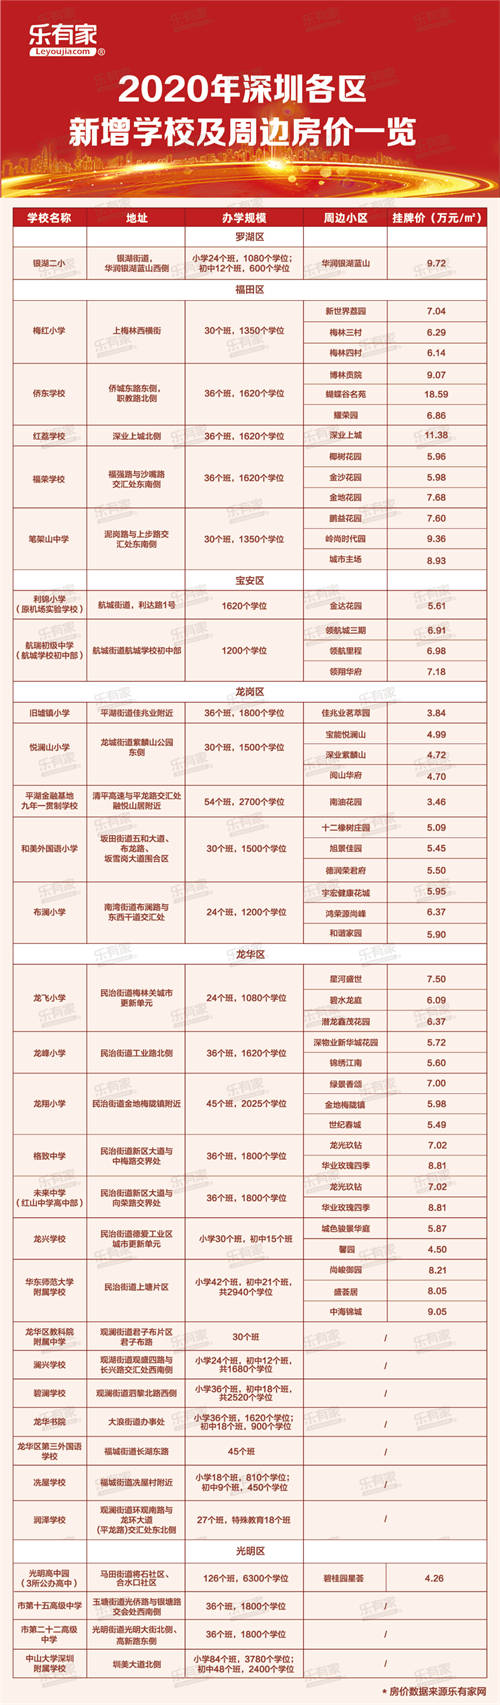 2020深圳新增学校及周边房价一览表